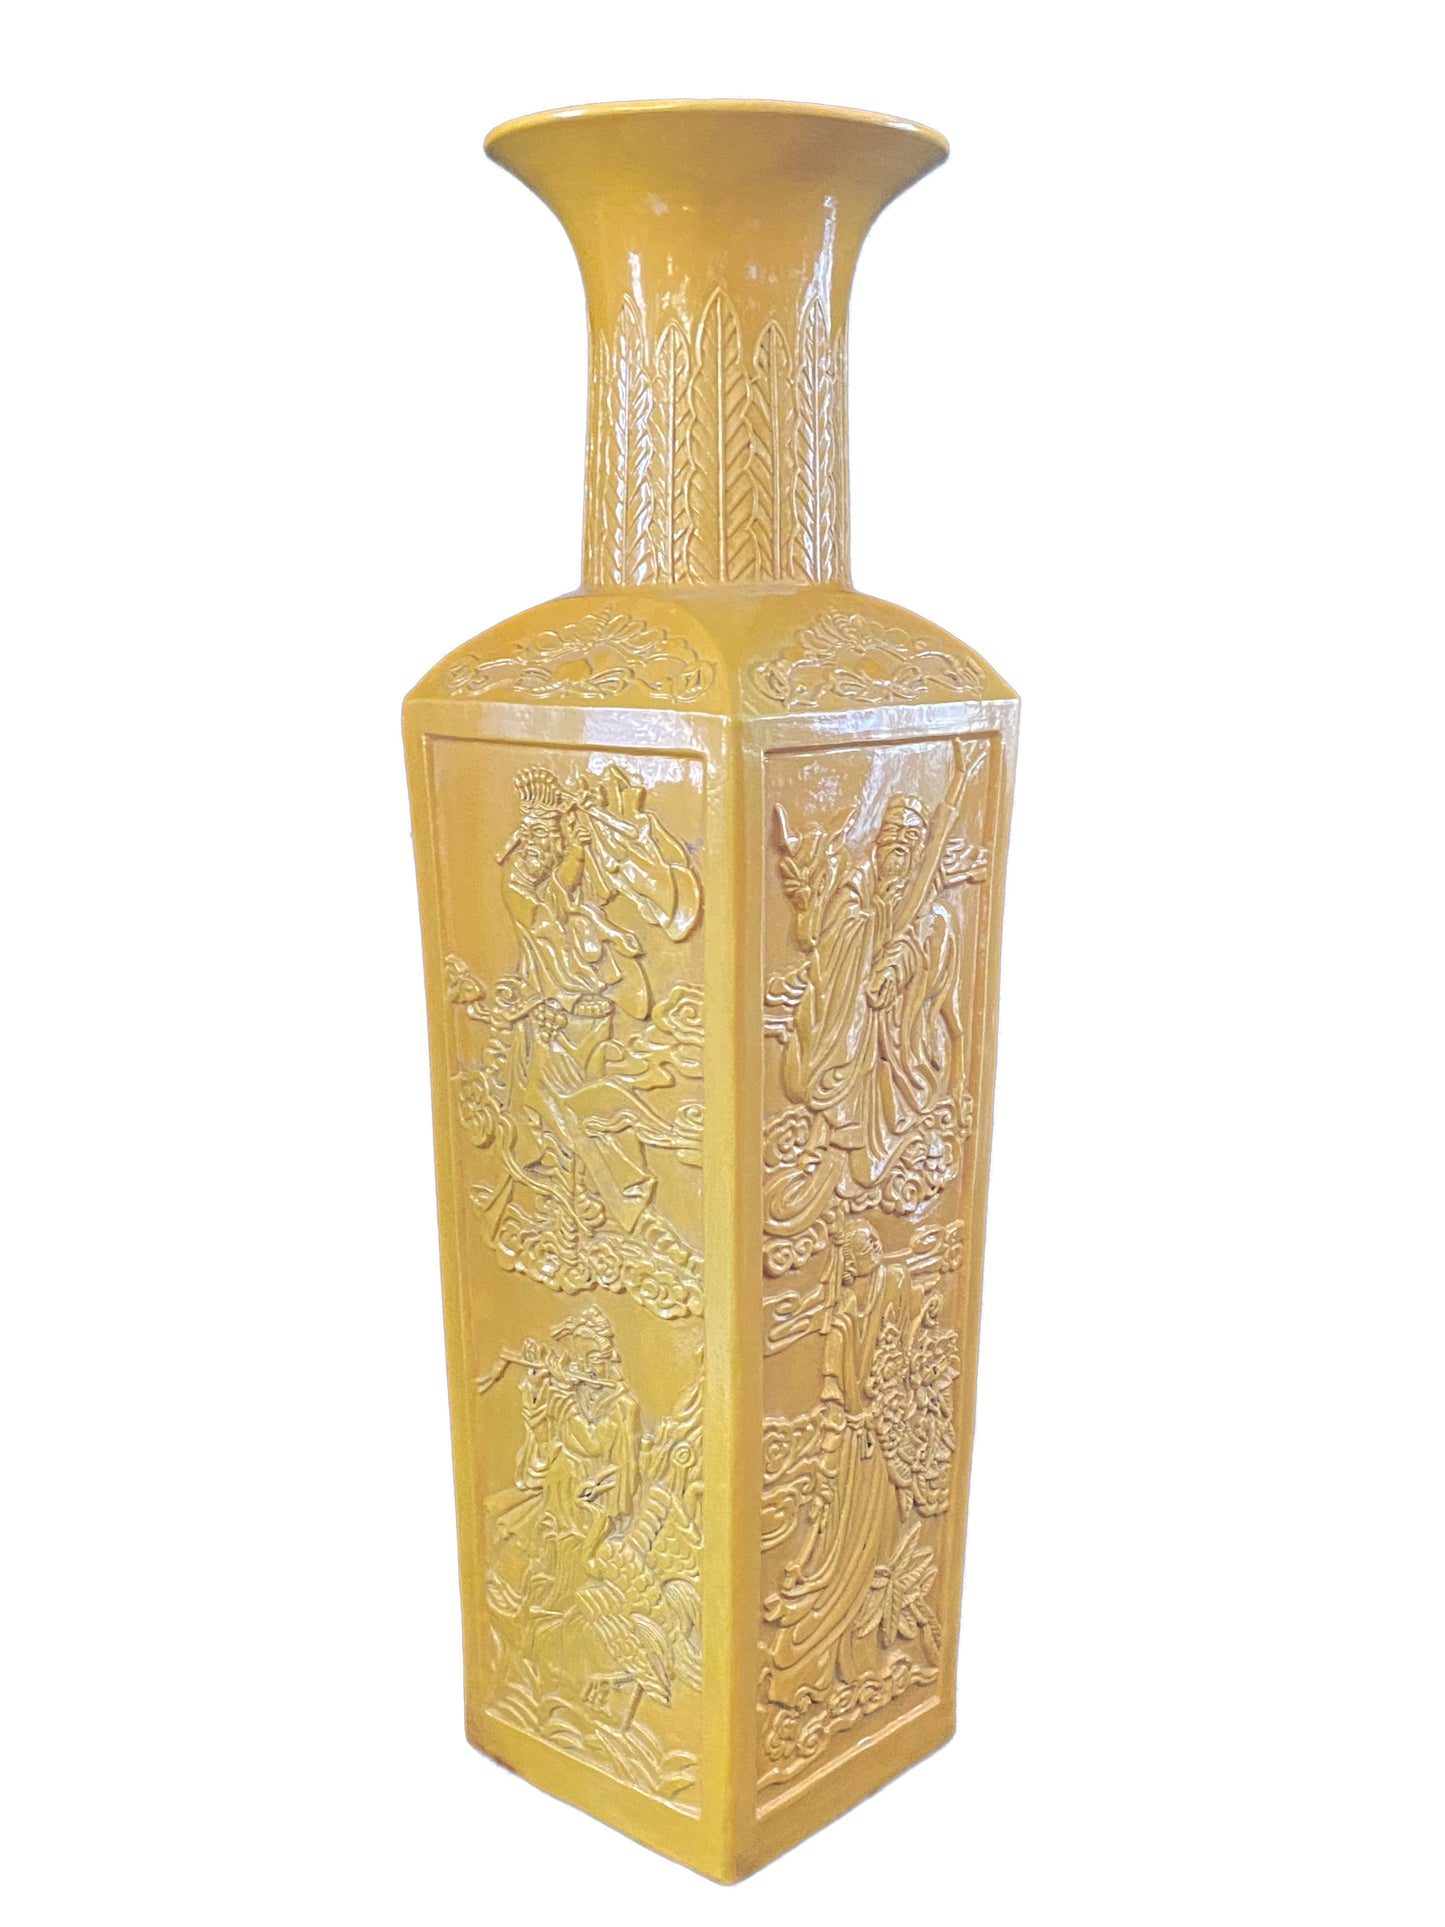 #3171 Chinoiserie Large Famille Jaune Style Vase.25"H